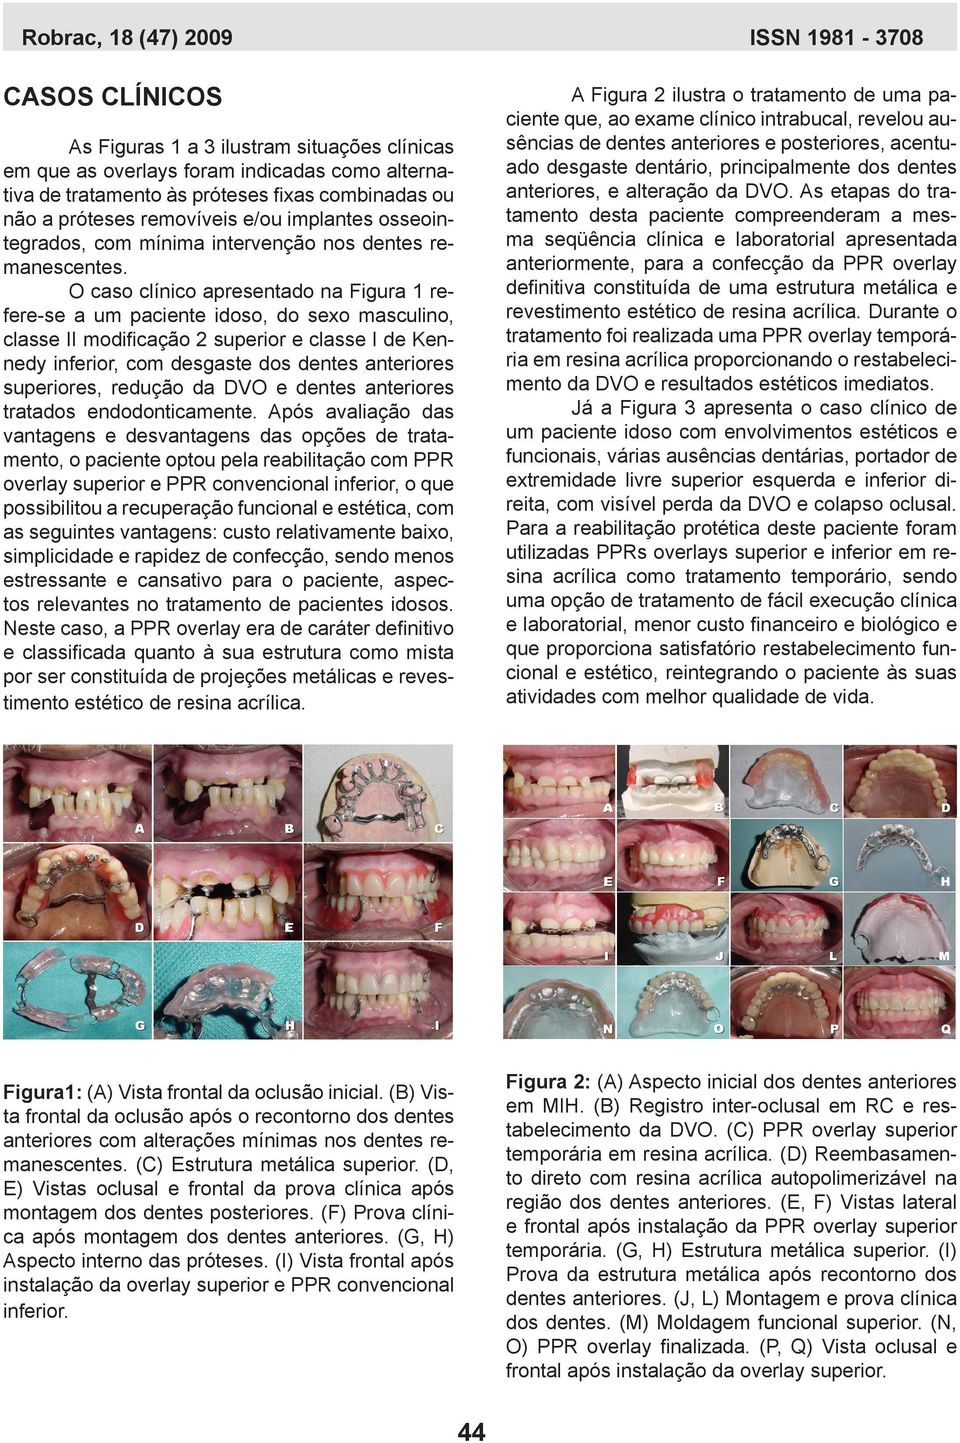 O caso clínico apresentado na Figura 1 refere-se a um paciente idoso, do sexo masculino, classe II modificação 2 superior e classe I de Kennedy inferior, com desgaste dos dentes anteriores